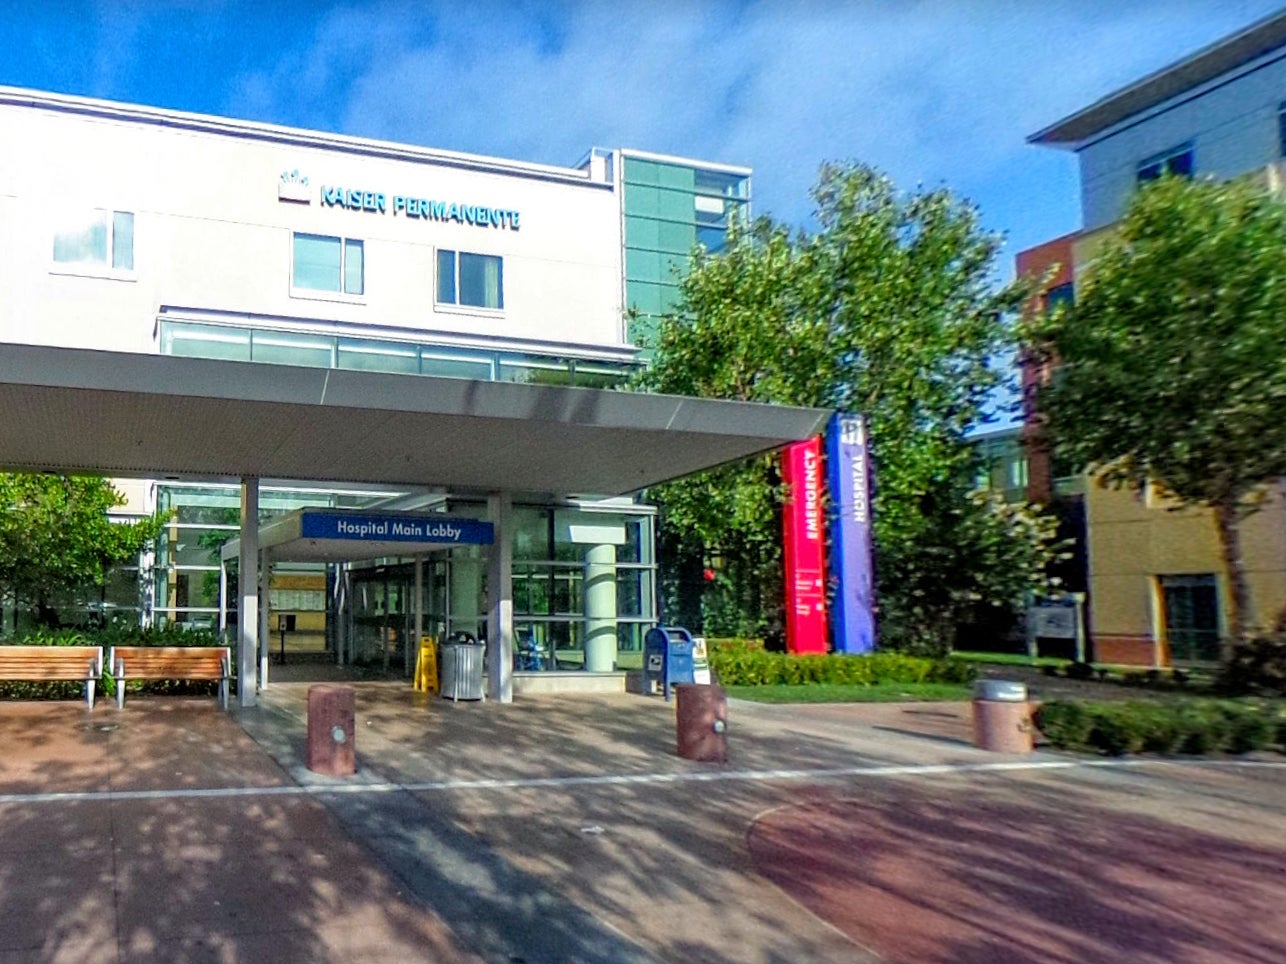 The Kaiser Permanente Santa Clara Medical Center in Santa Clara, California